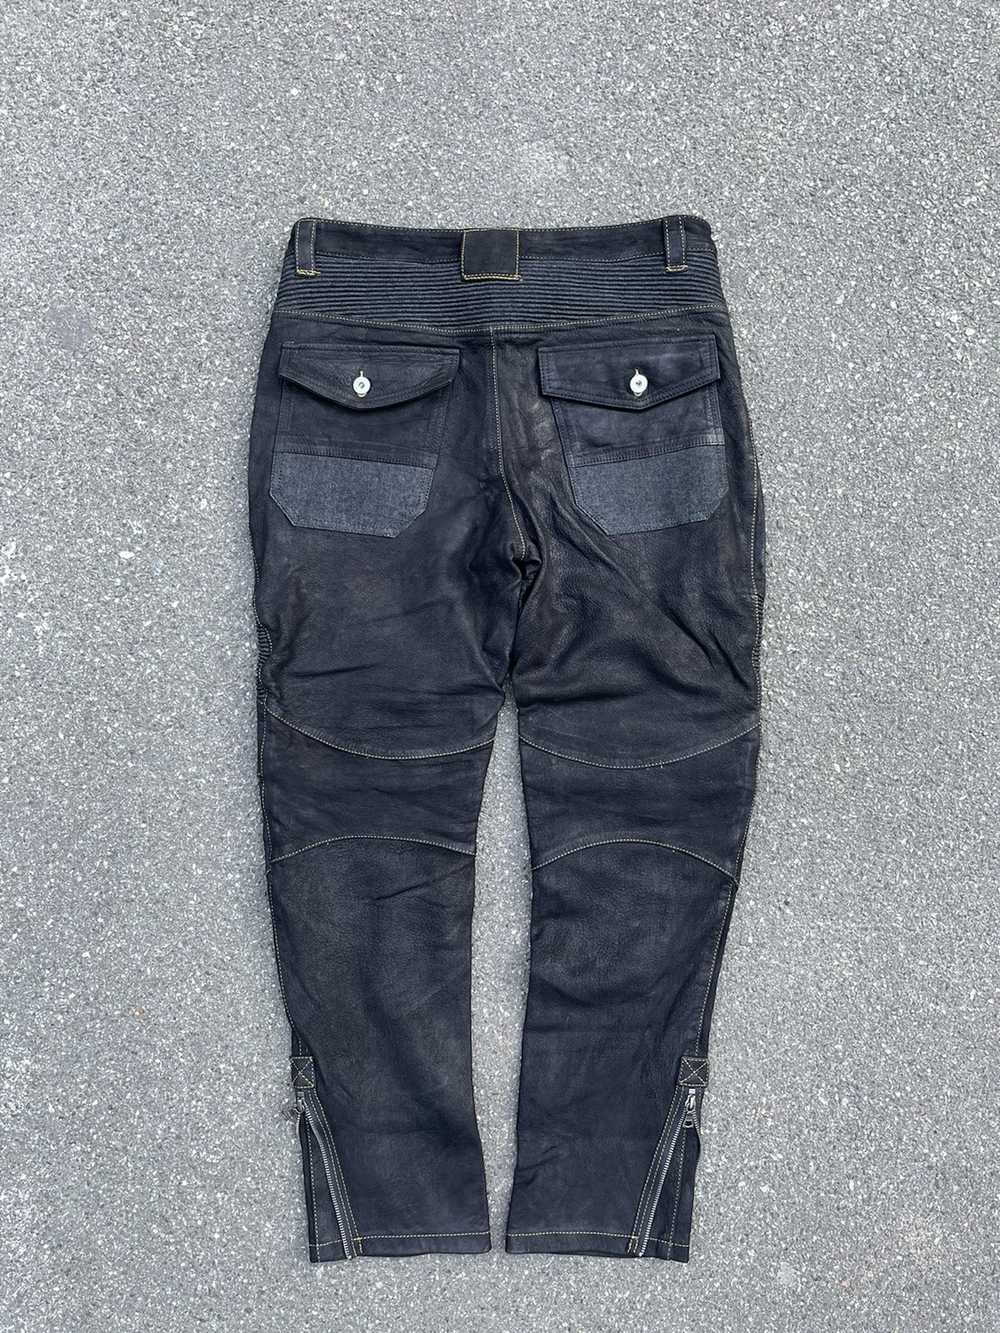 Biker Jeans × Genuine Leather × Vintage Vintage C… - image 7